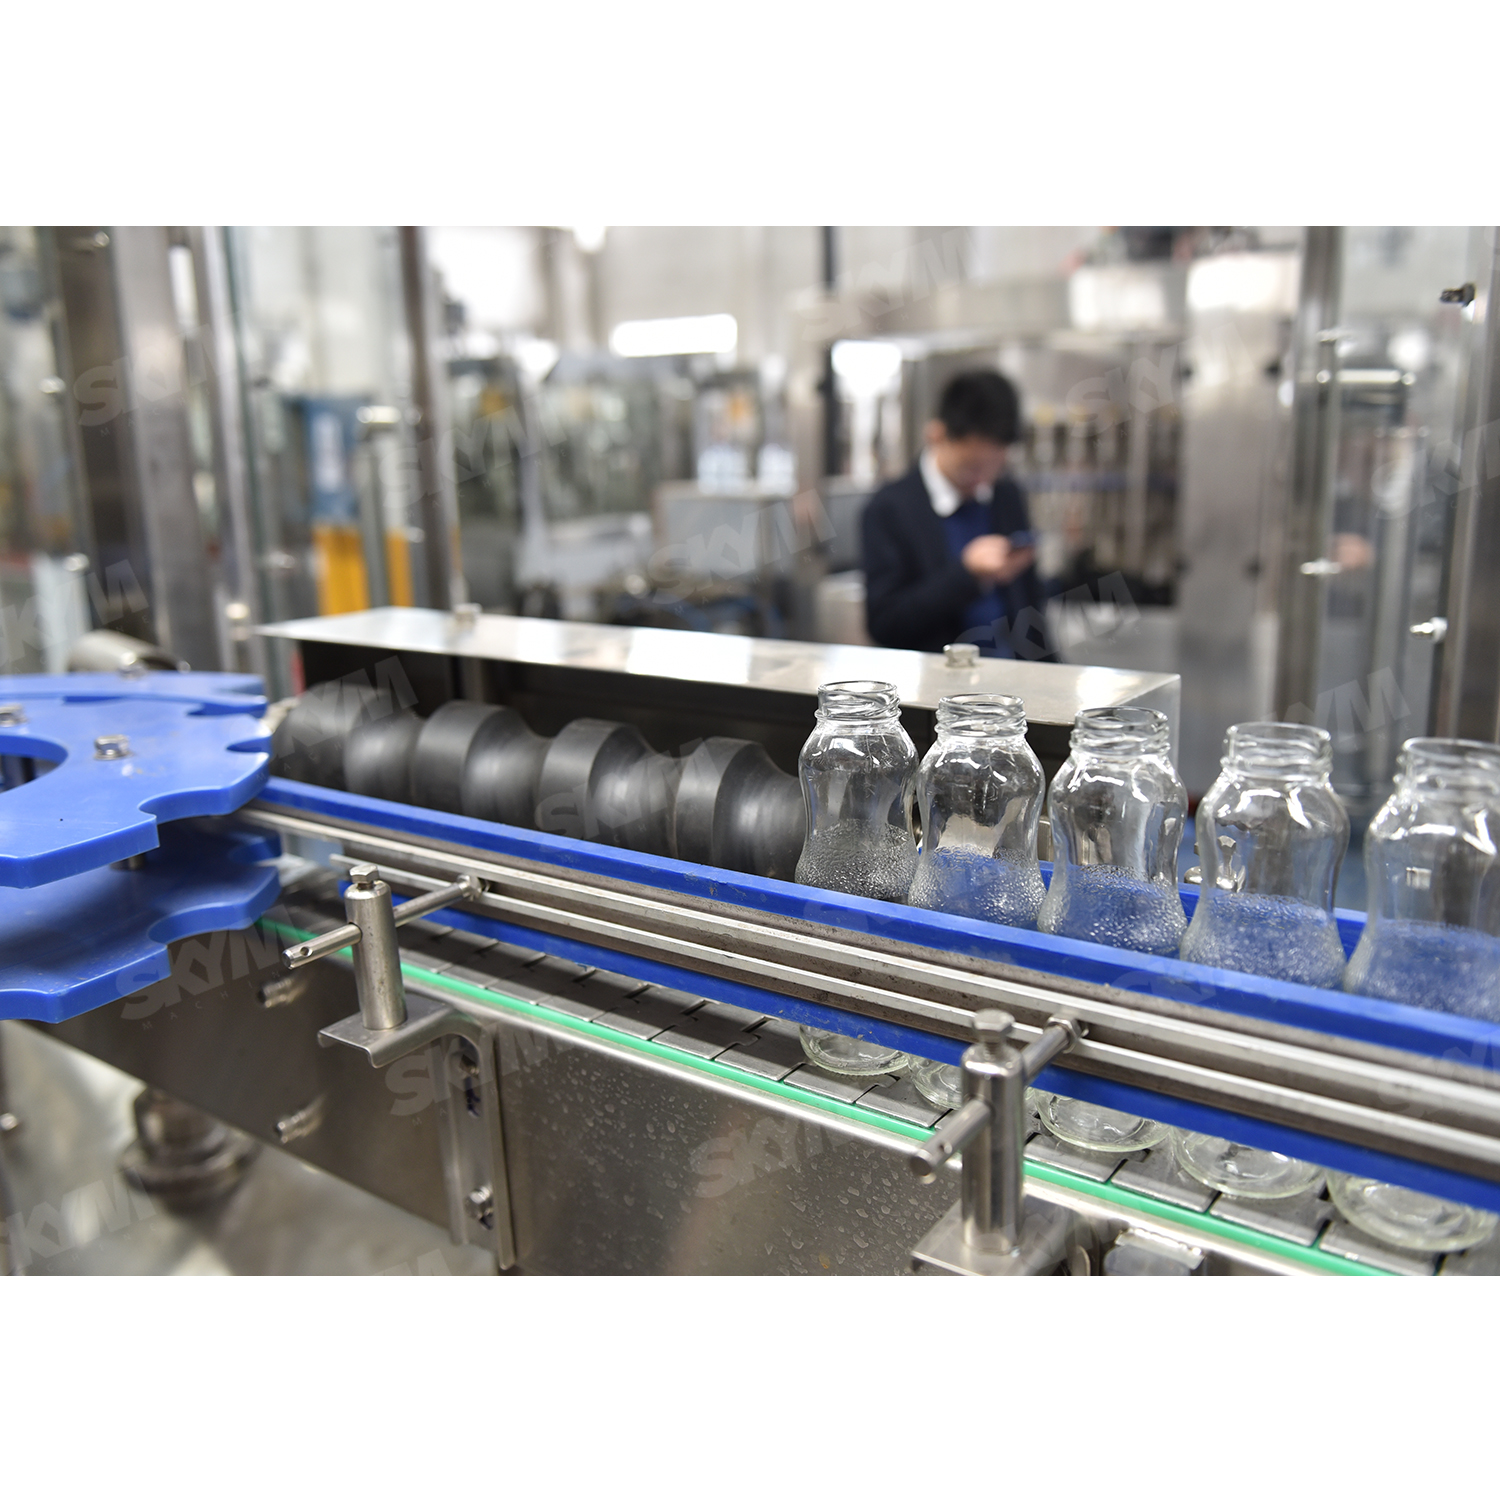 Machine de remplissage de bouteilles de jus en plastique industriel